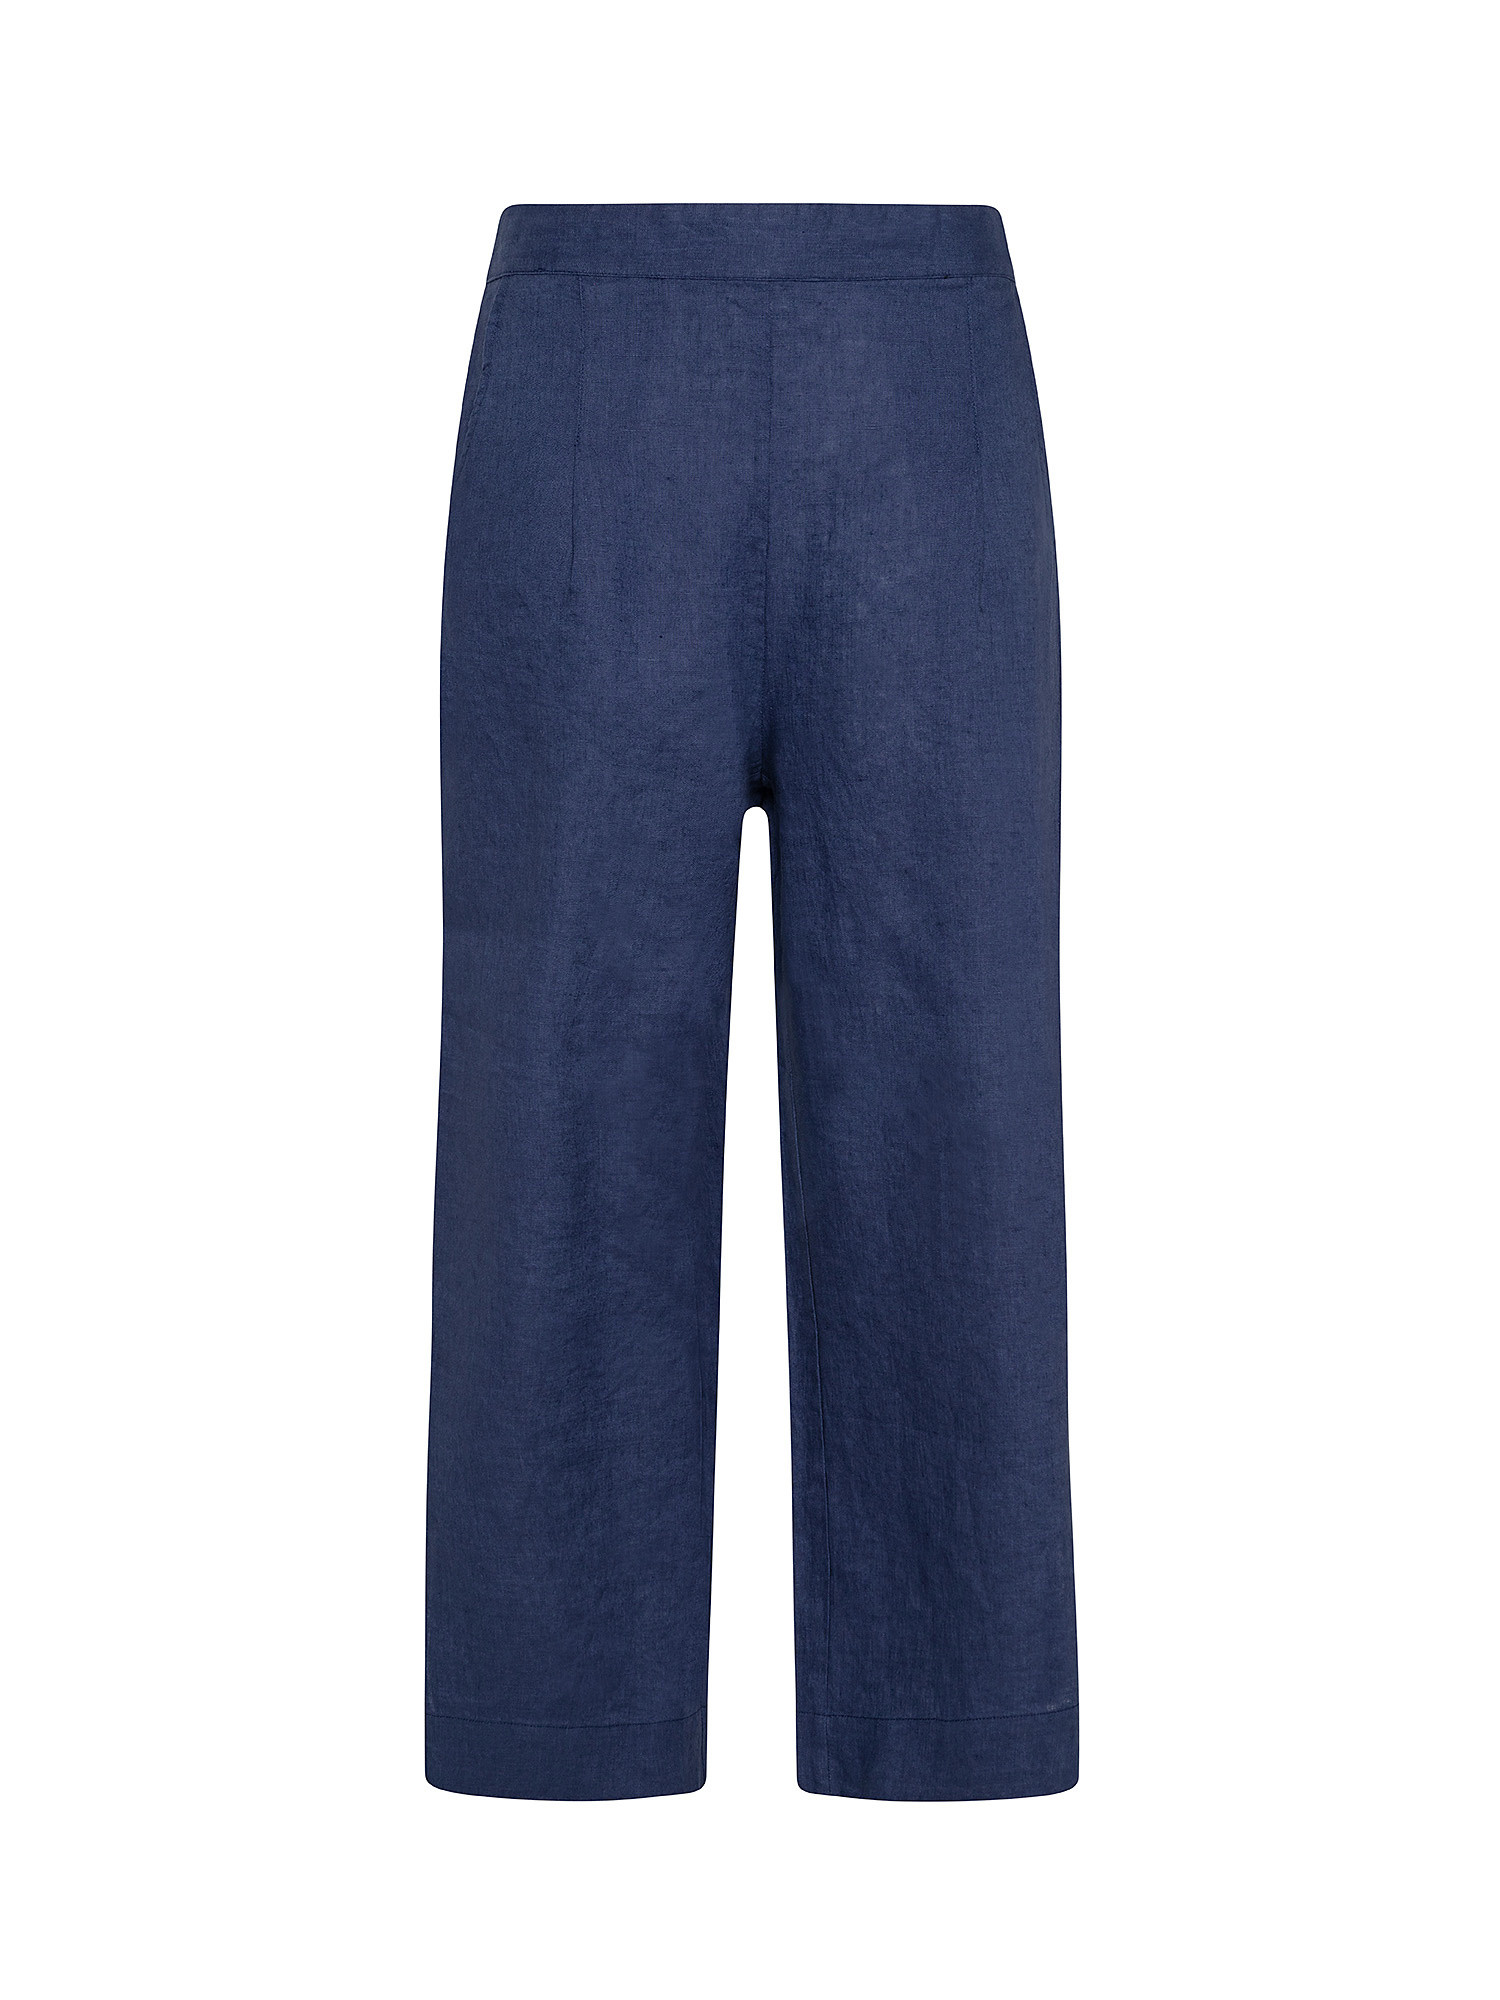 Pantaloni puro lino con spacchi, Blu, large image number 0